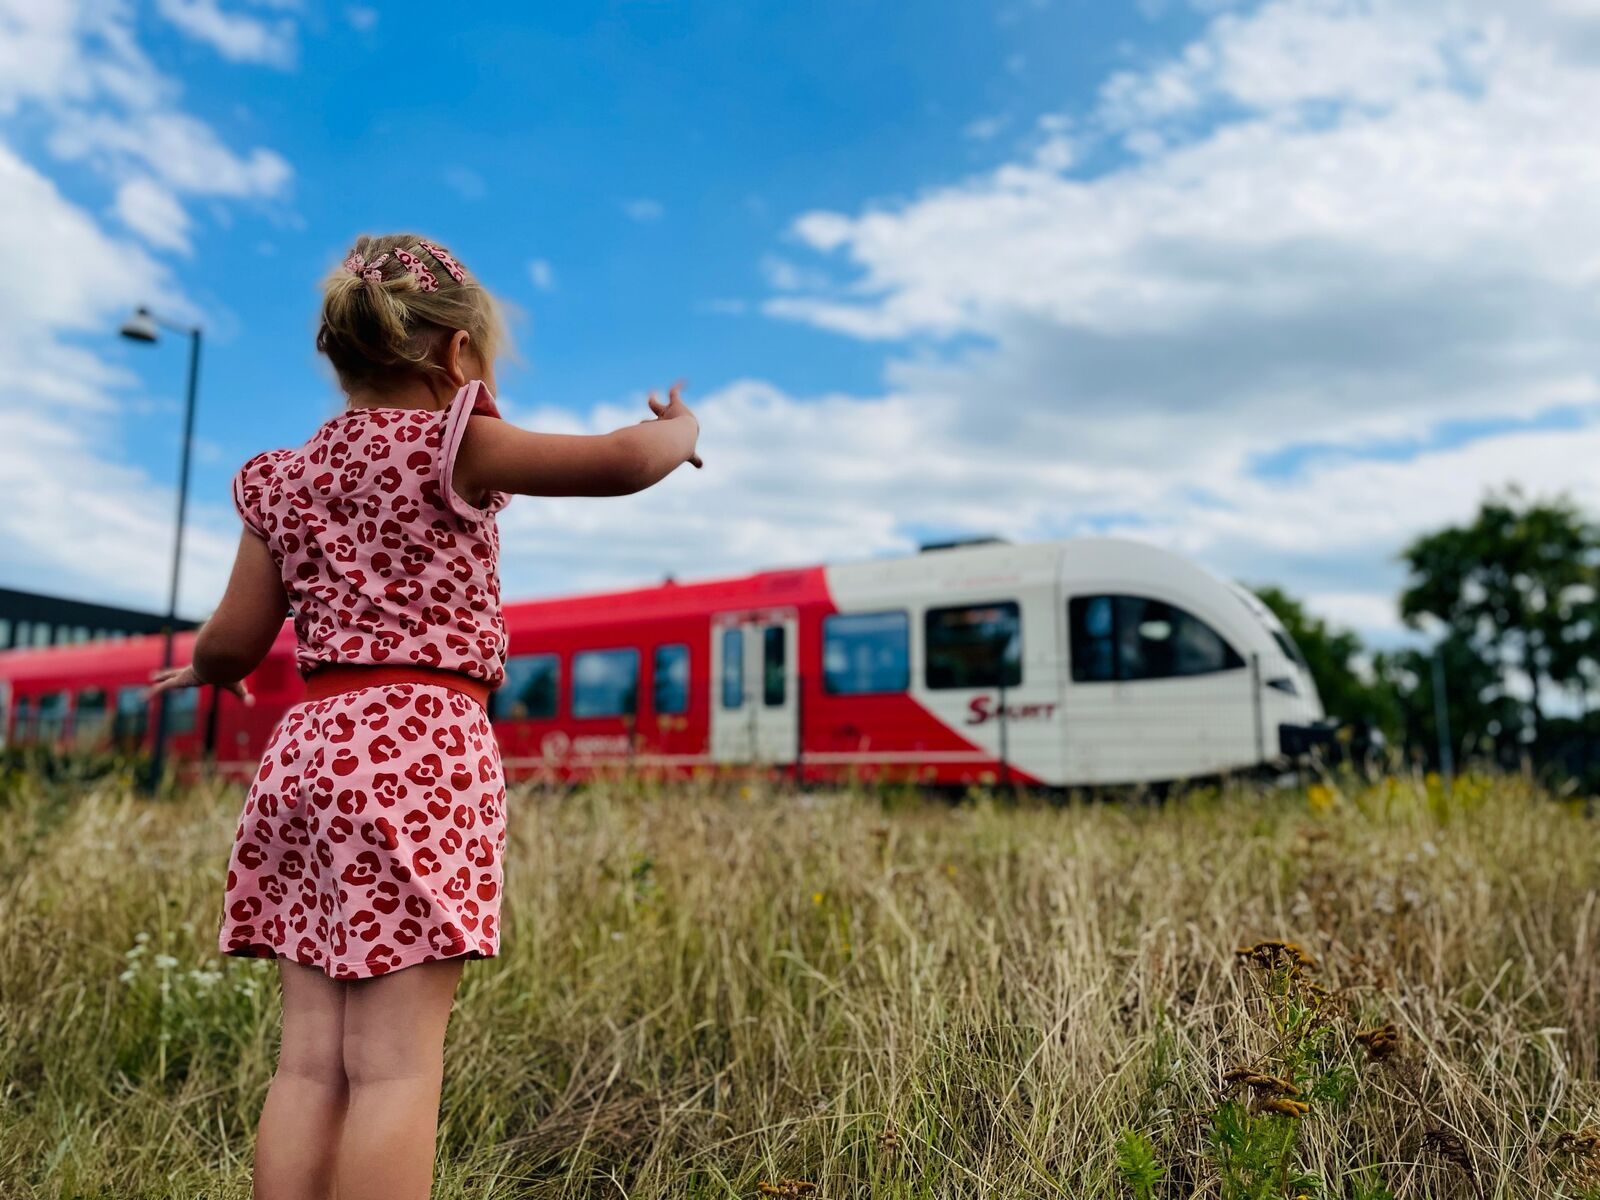 Een meisje van een jaar of vijf in roze zomerjurk staat in hoog gras en kijkt naar een rode Arriva-trein.